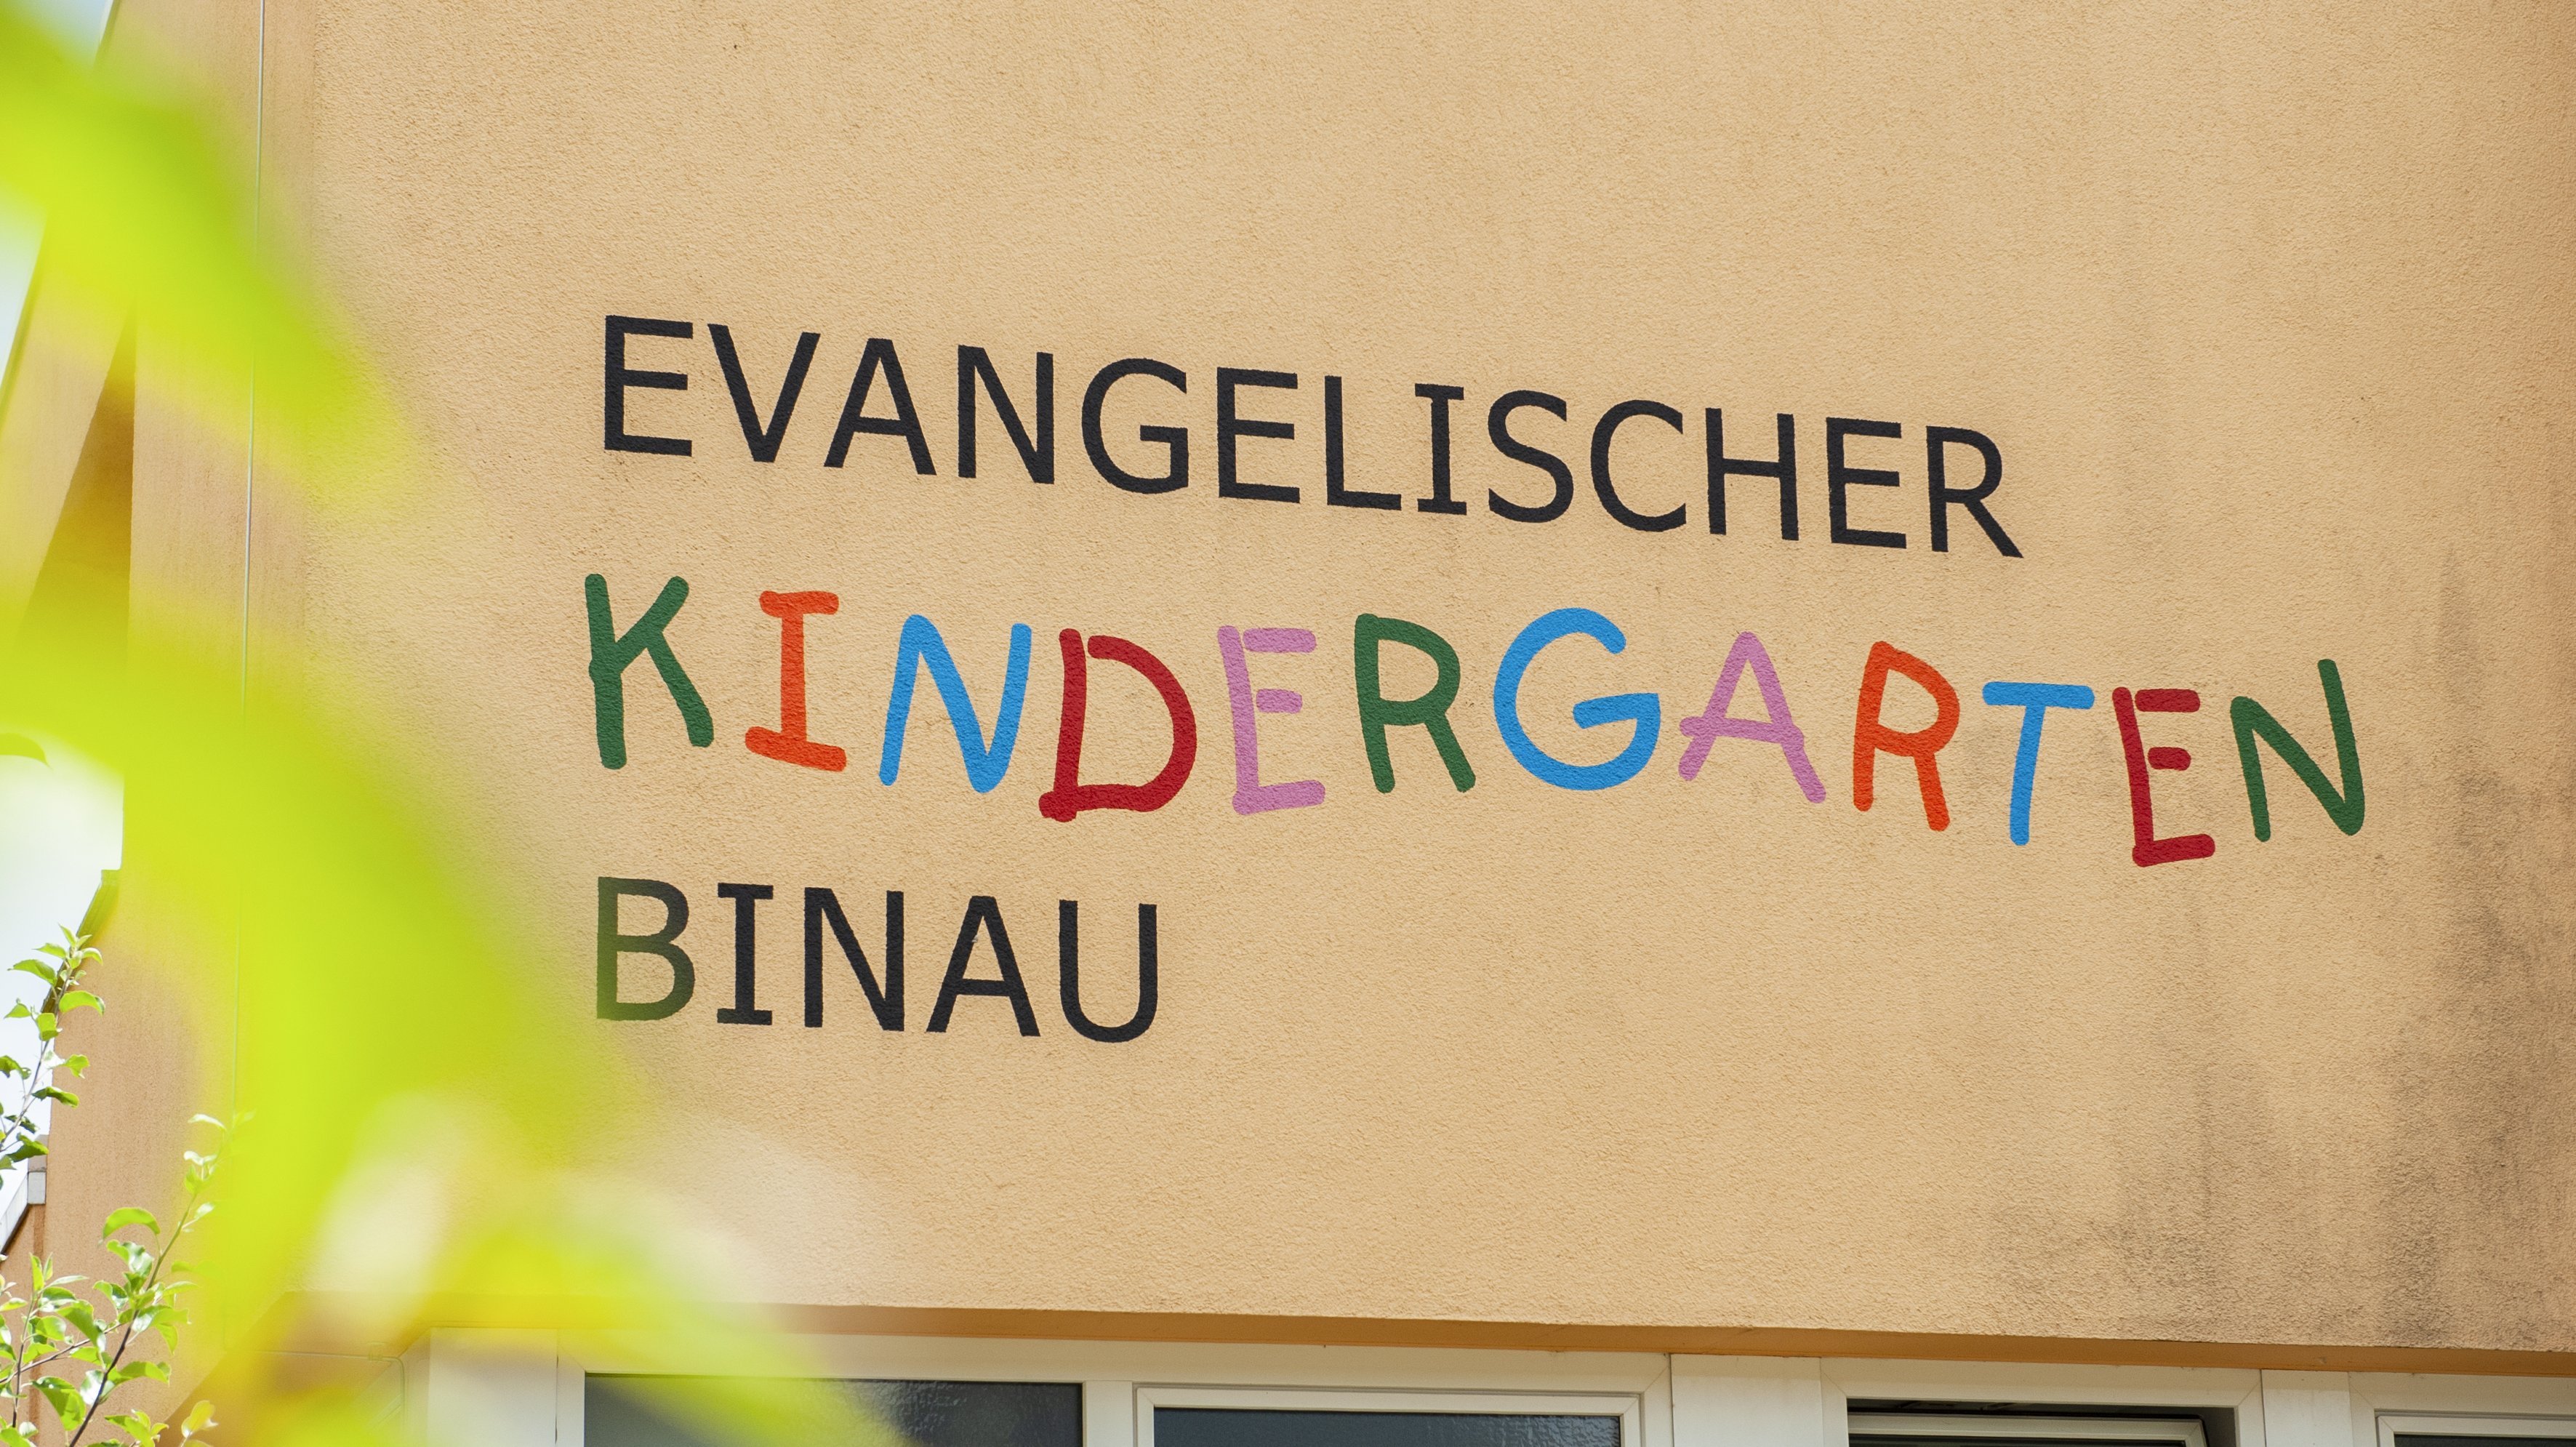 Evangelischer Kindergarten Binau 